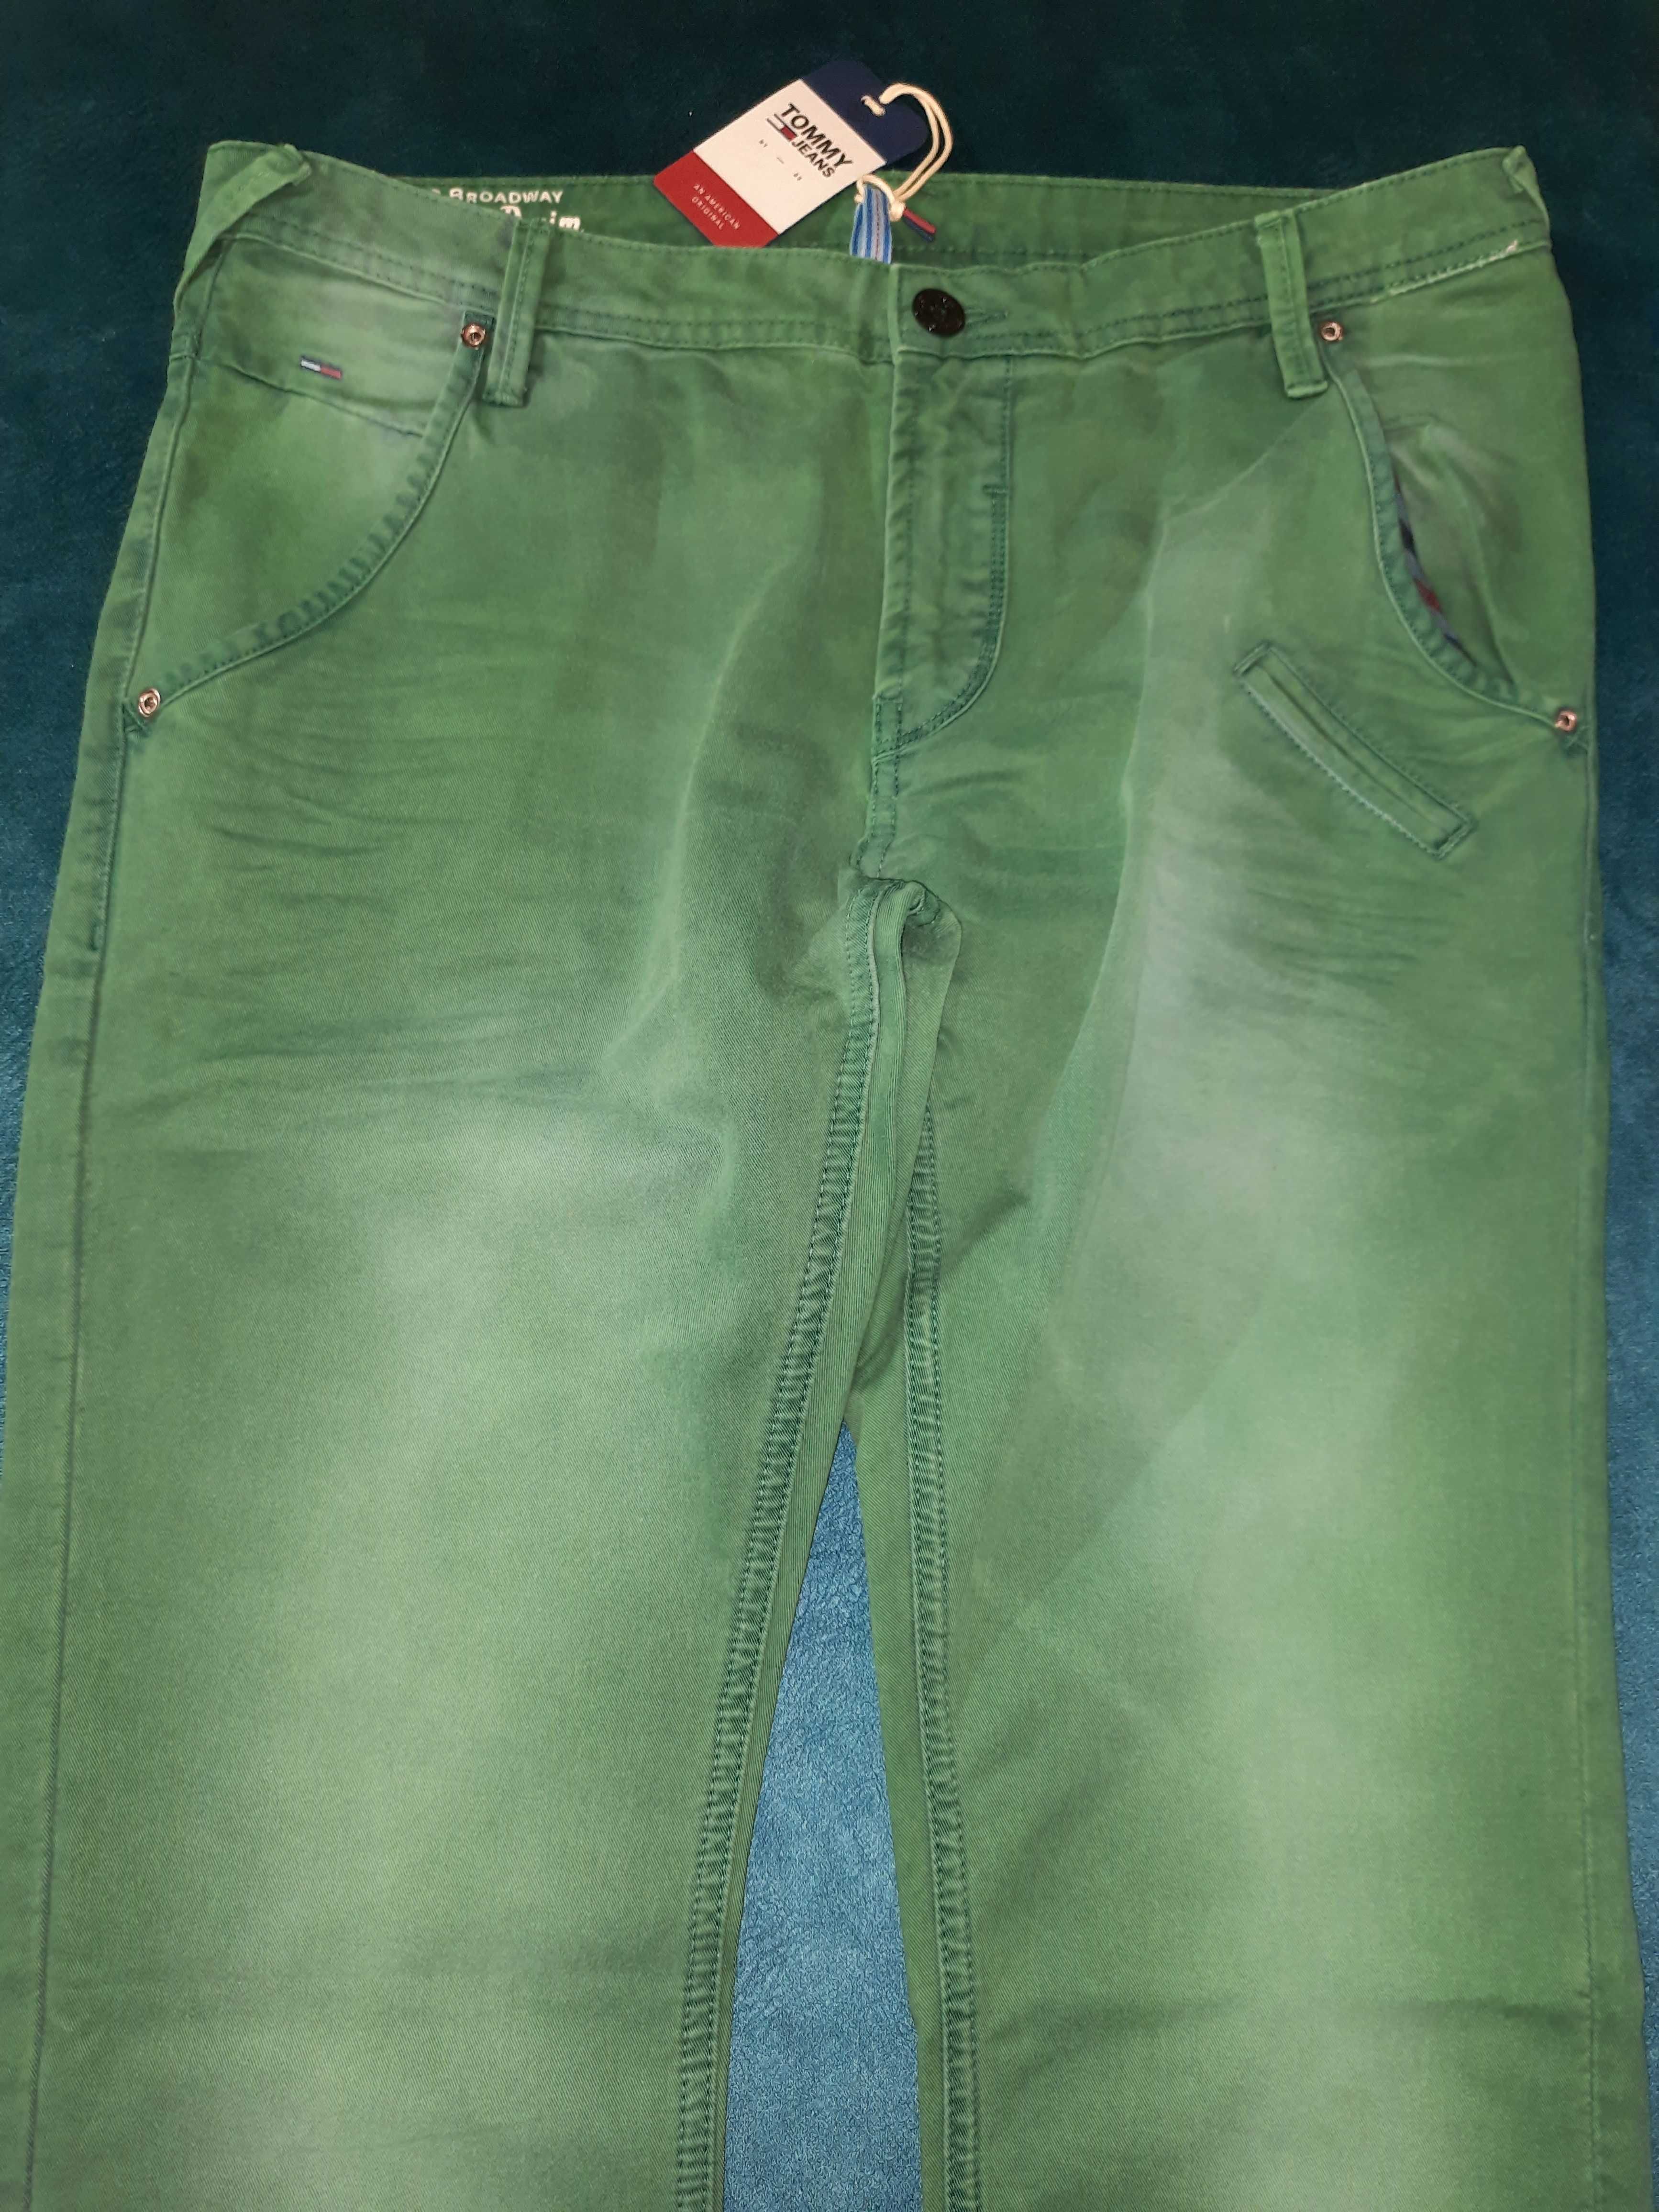 Стильные летние зеленые джинсы Tommy Hilfiger. W32L34.Новые